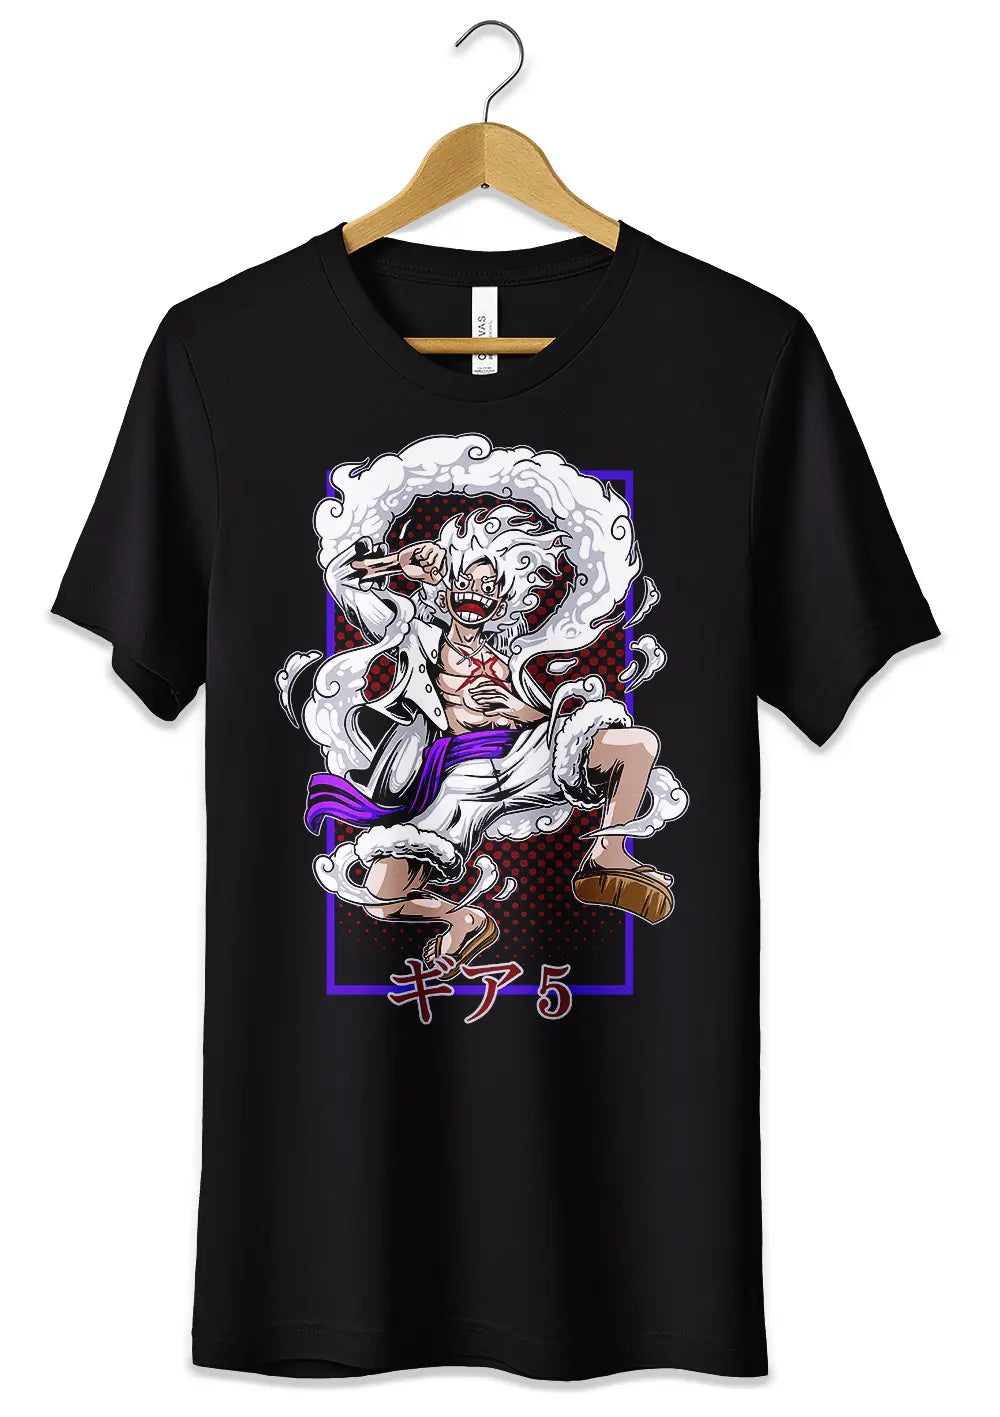 T-Shirt Maglietta Anime Monkey D Luffy Rubber Gear 5 One Piece, CmrDesignStore, T-Shirt, t-shirt-maglietta-anime-monkey-d-luffy-rubber-gear-5-one-piece, CmrDesignStore